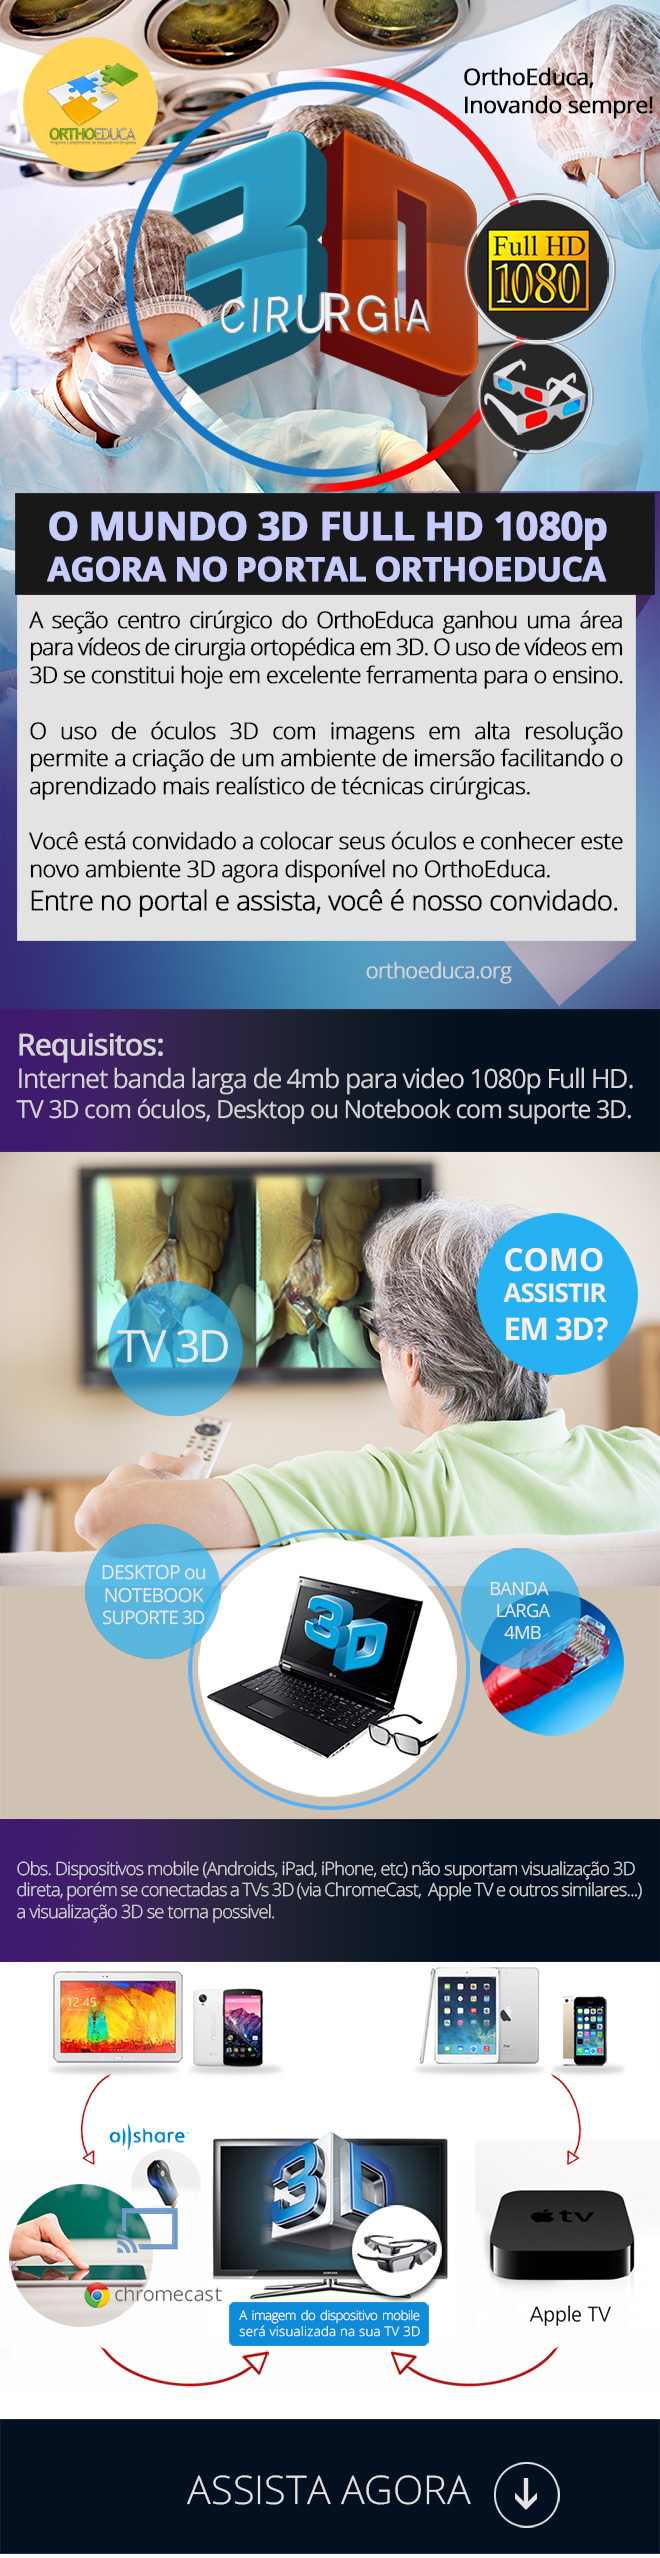 3D Full HD: Vídeos de cirurgia no OrthoEduca